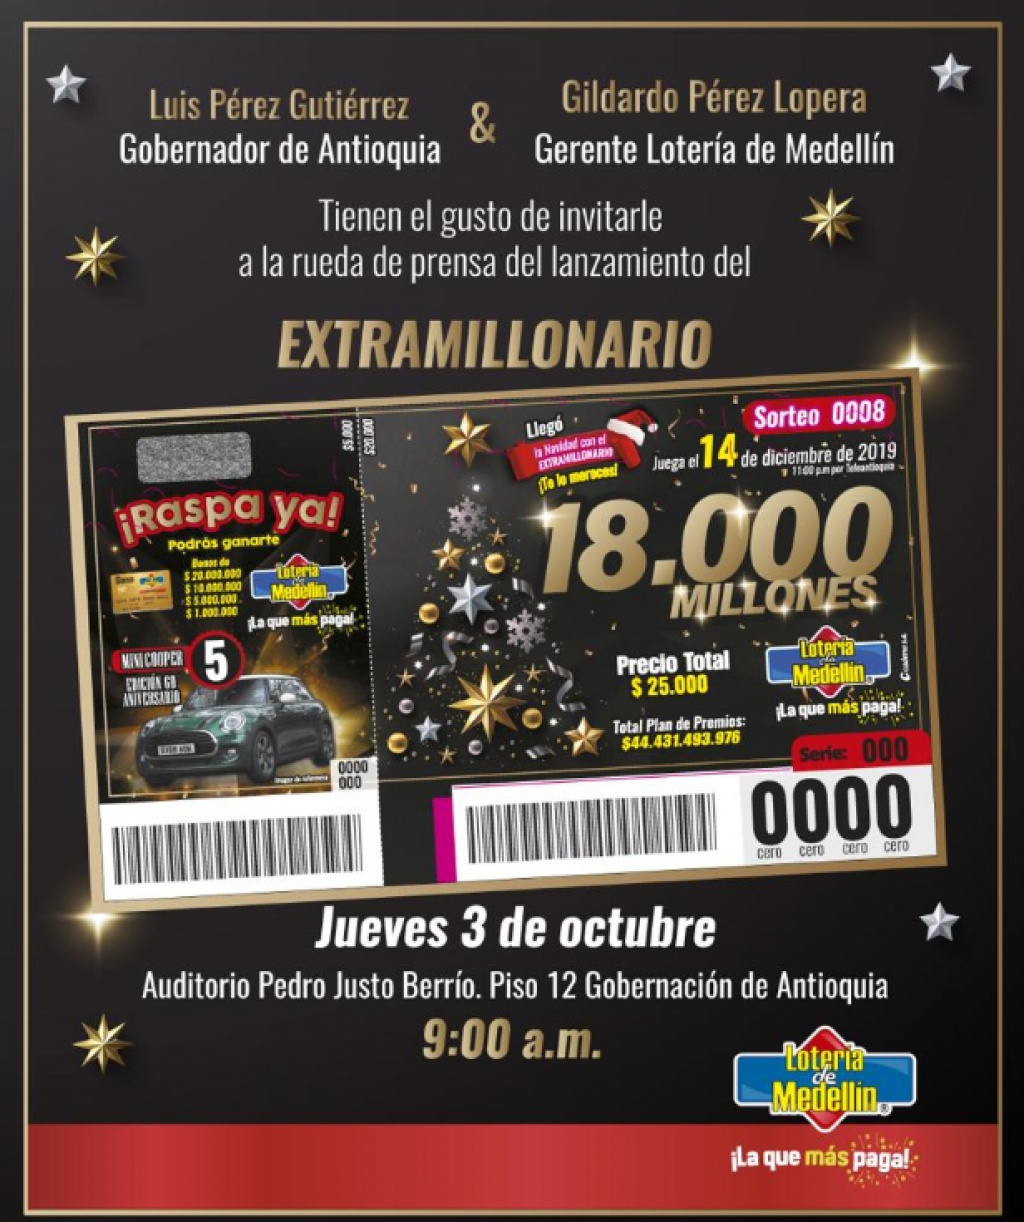 Invitación lanzamiento Extramillonario de la Lotería de Medellín, jueves 3 de octubre, 9:00 a.m. Salón Pedro Justo Berrío, piso 12 Gobernación